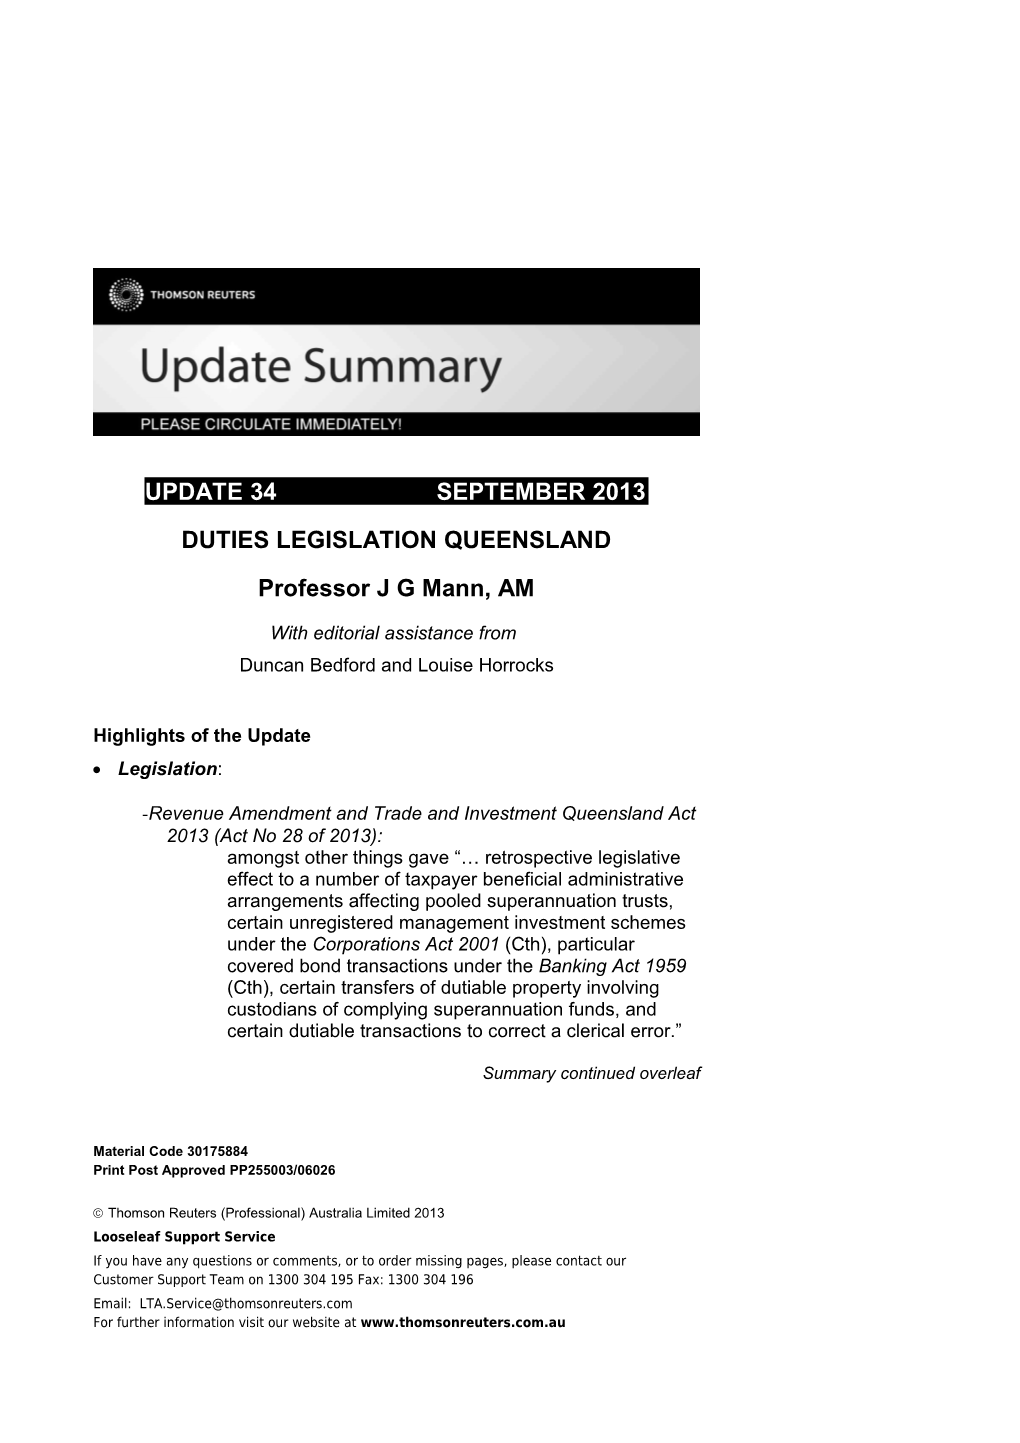 Duties Legislation Queensland